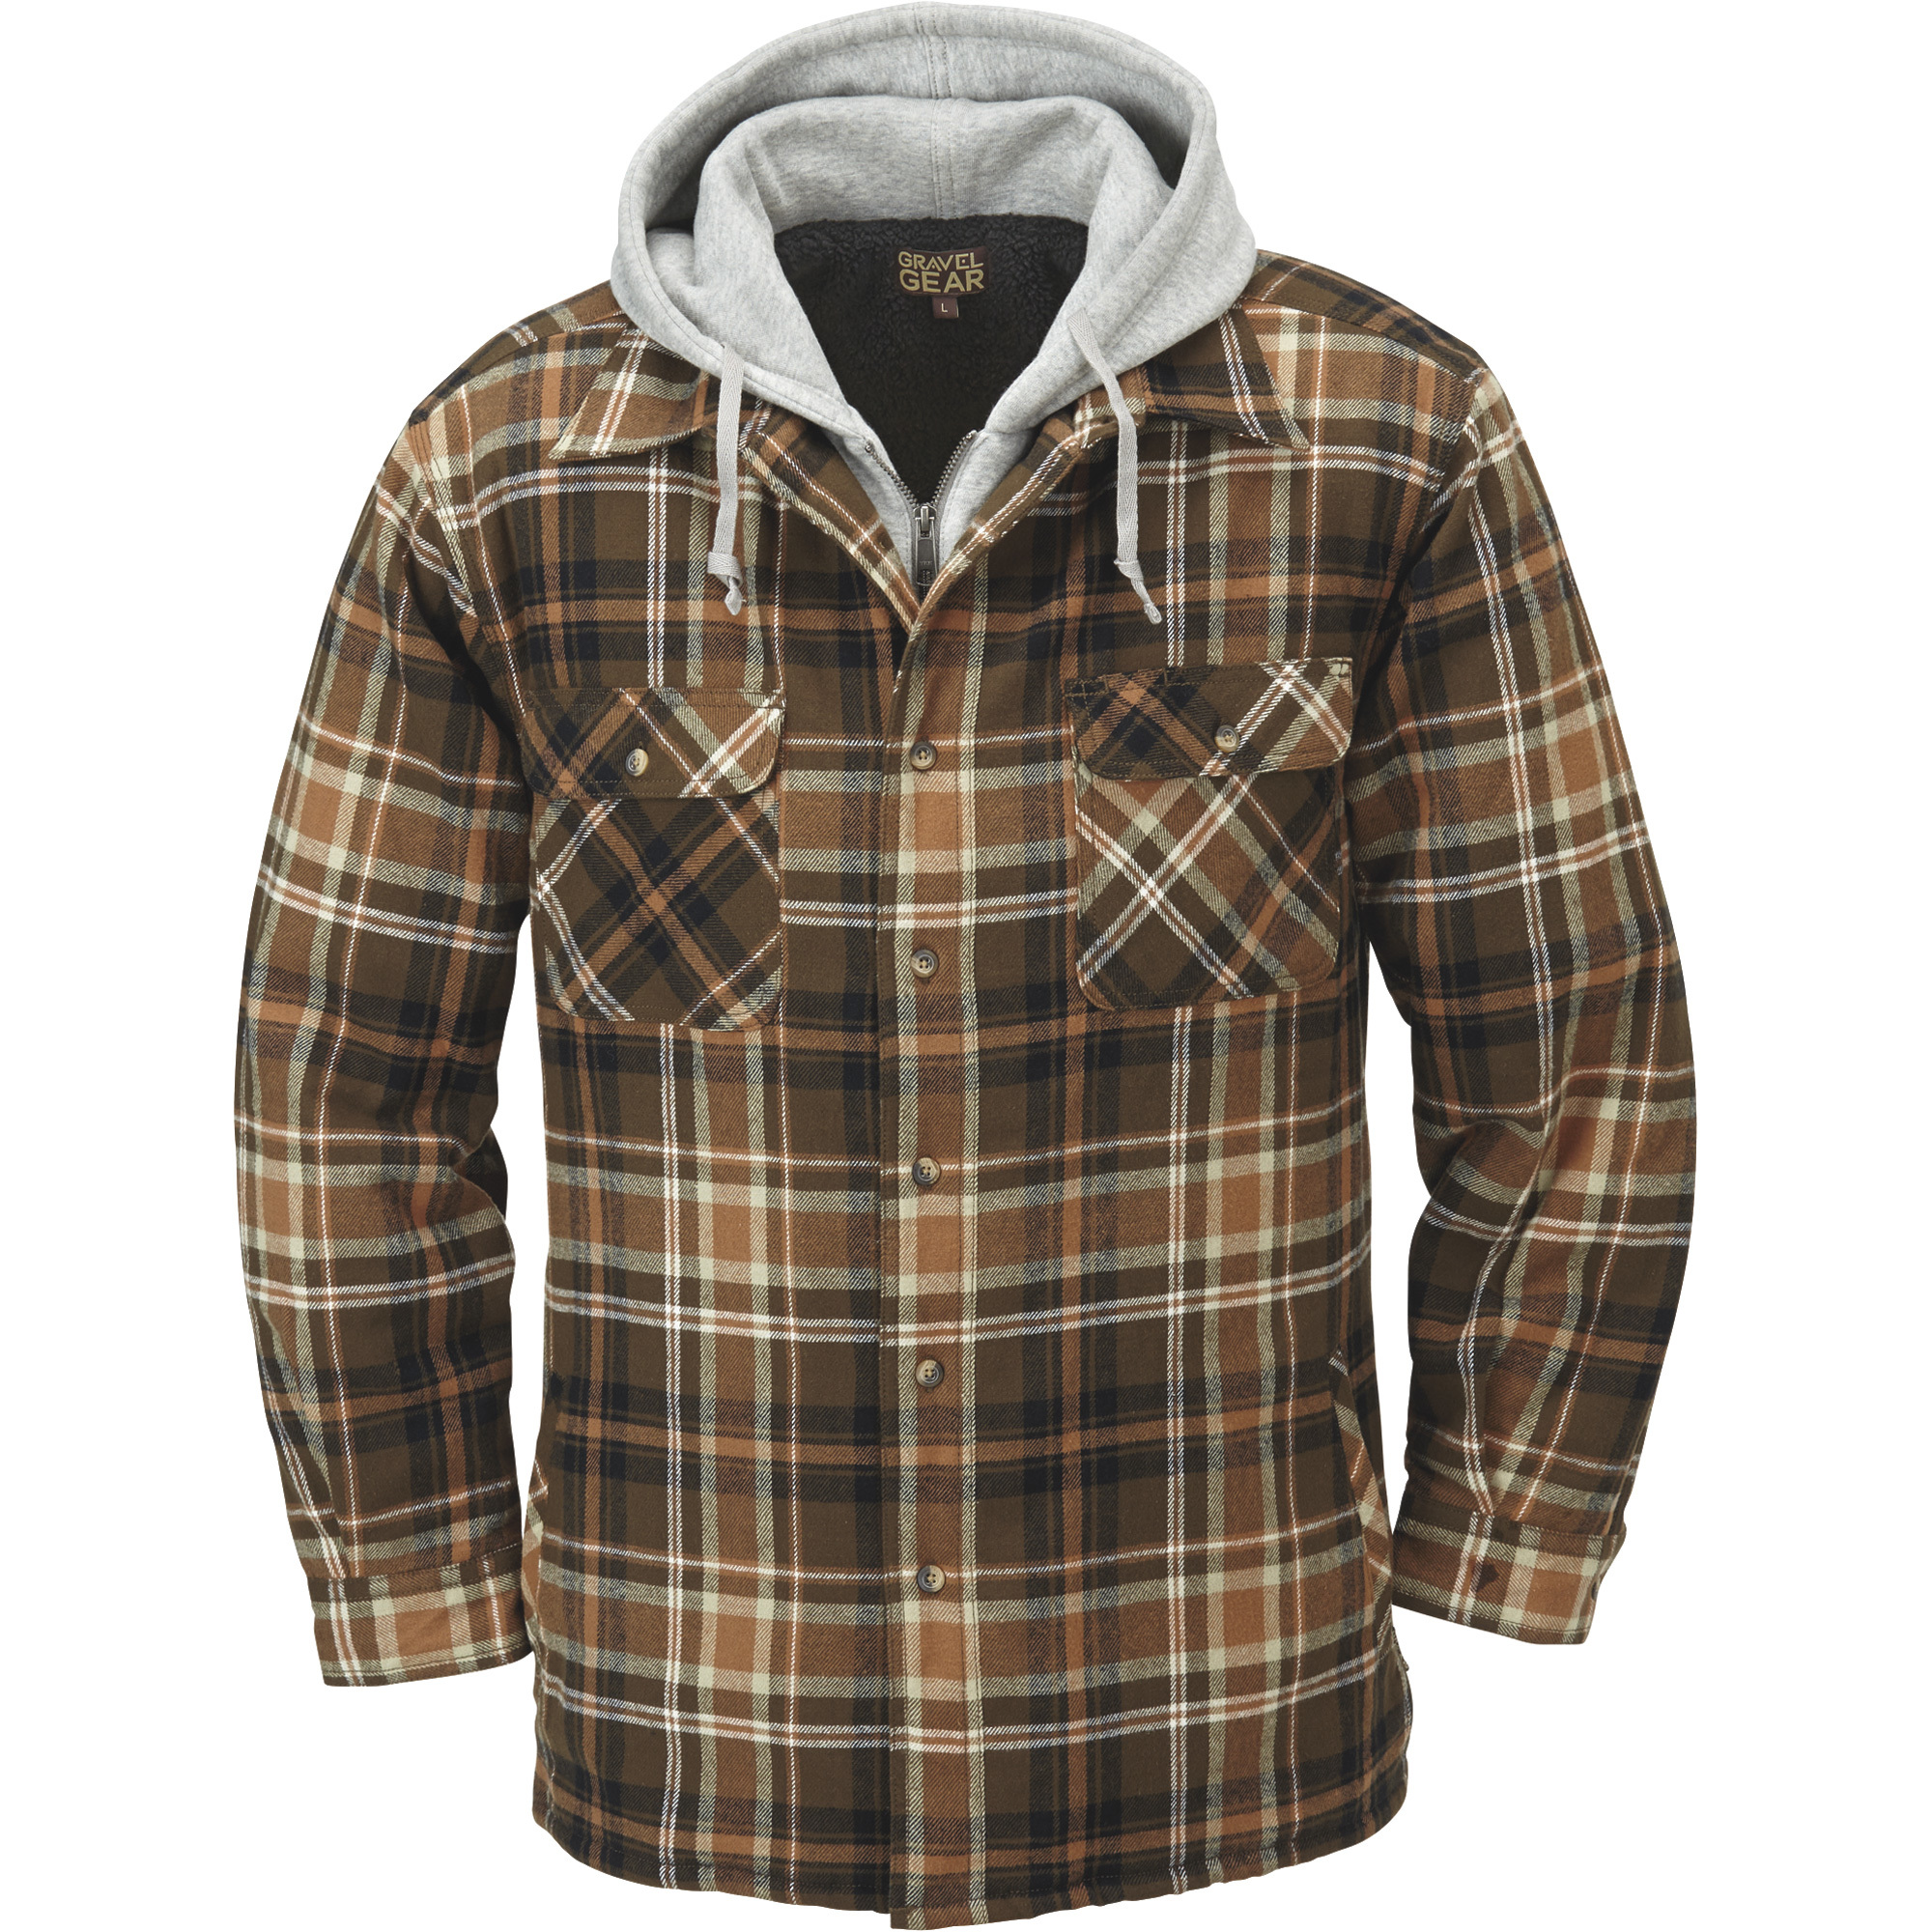 Gravel Gear Sherpa-Lined Hooded Flannel Shirt Jacket â Large, Tan